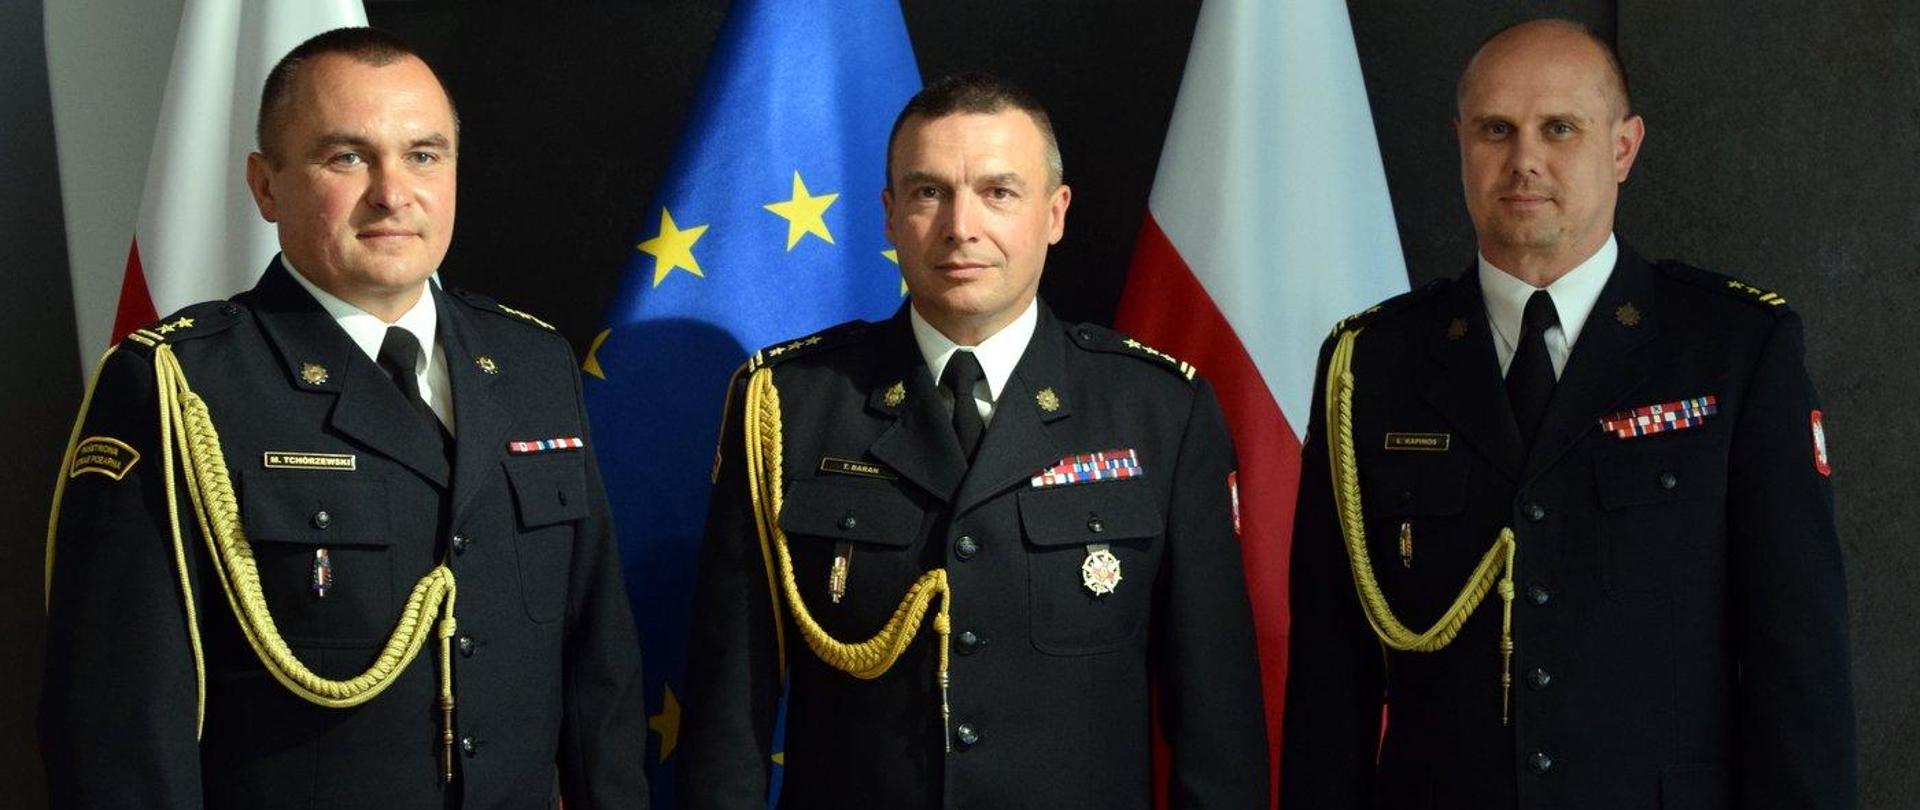 Zdjęcie zrobione wewnątrz pomieszczenia. Na zdjęciu trzech oficerów Państwowej Straży Pożarnej. Za nimi stoją biało-czerwone flagi oraz flaga UE.